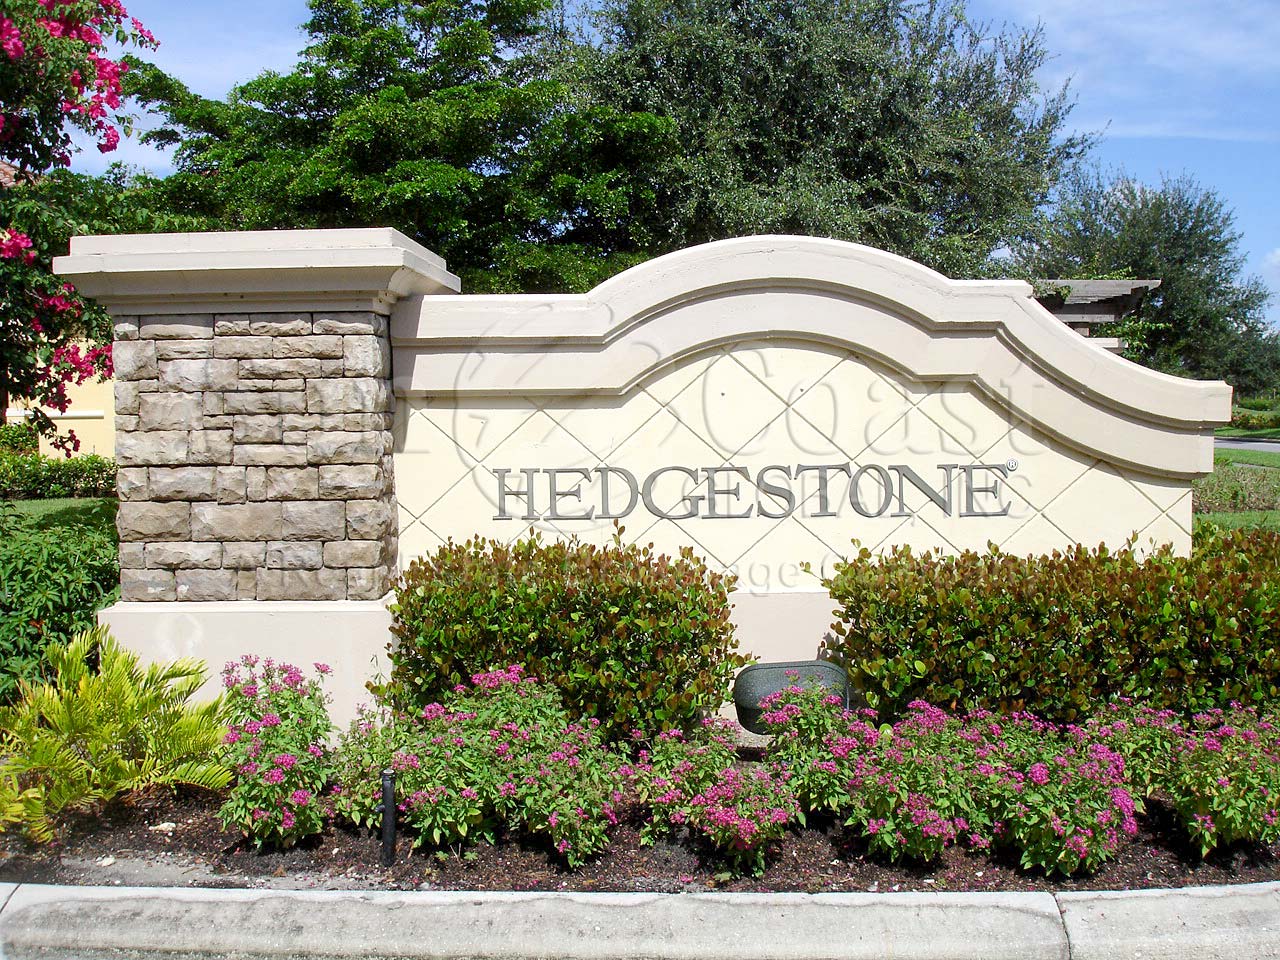 Hedgestone Signage